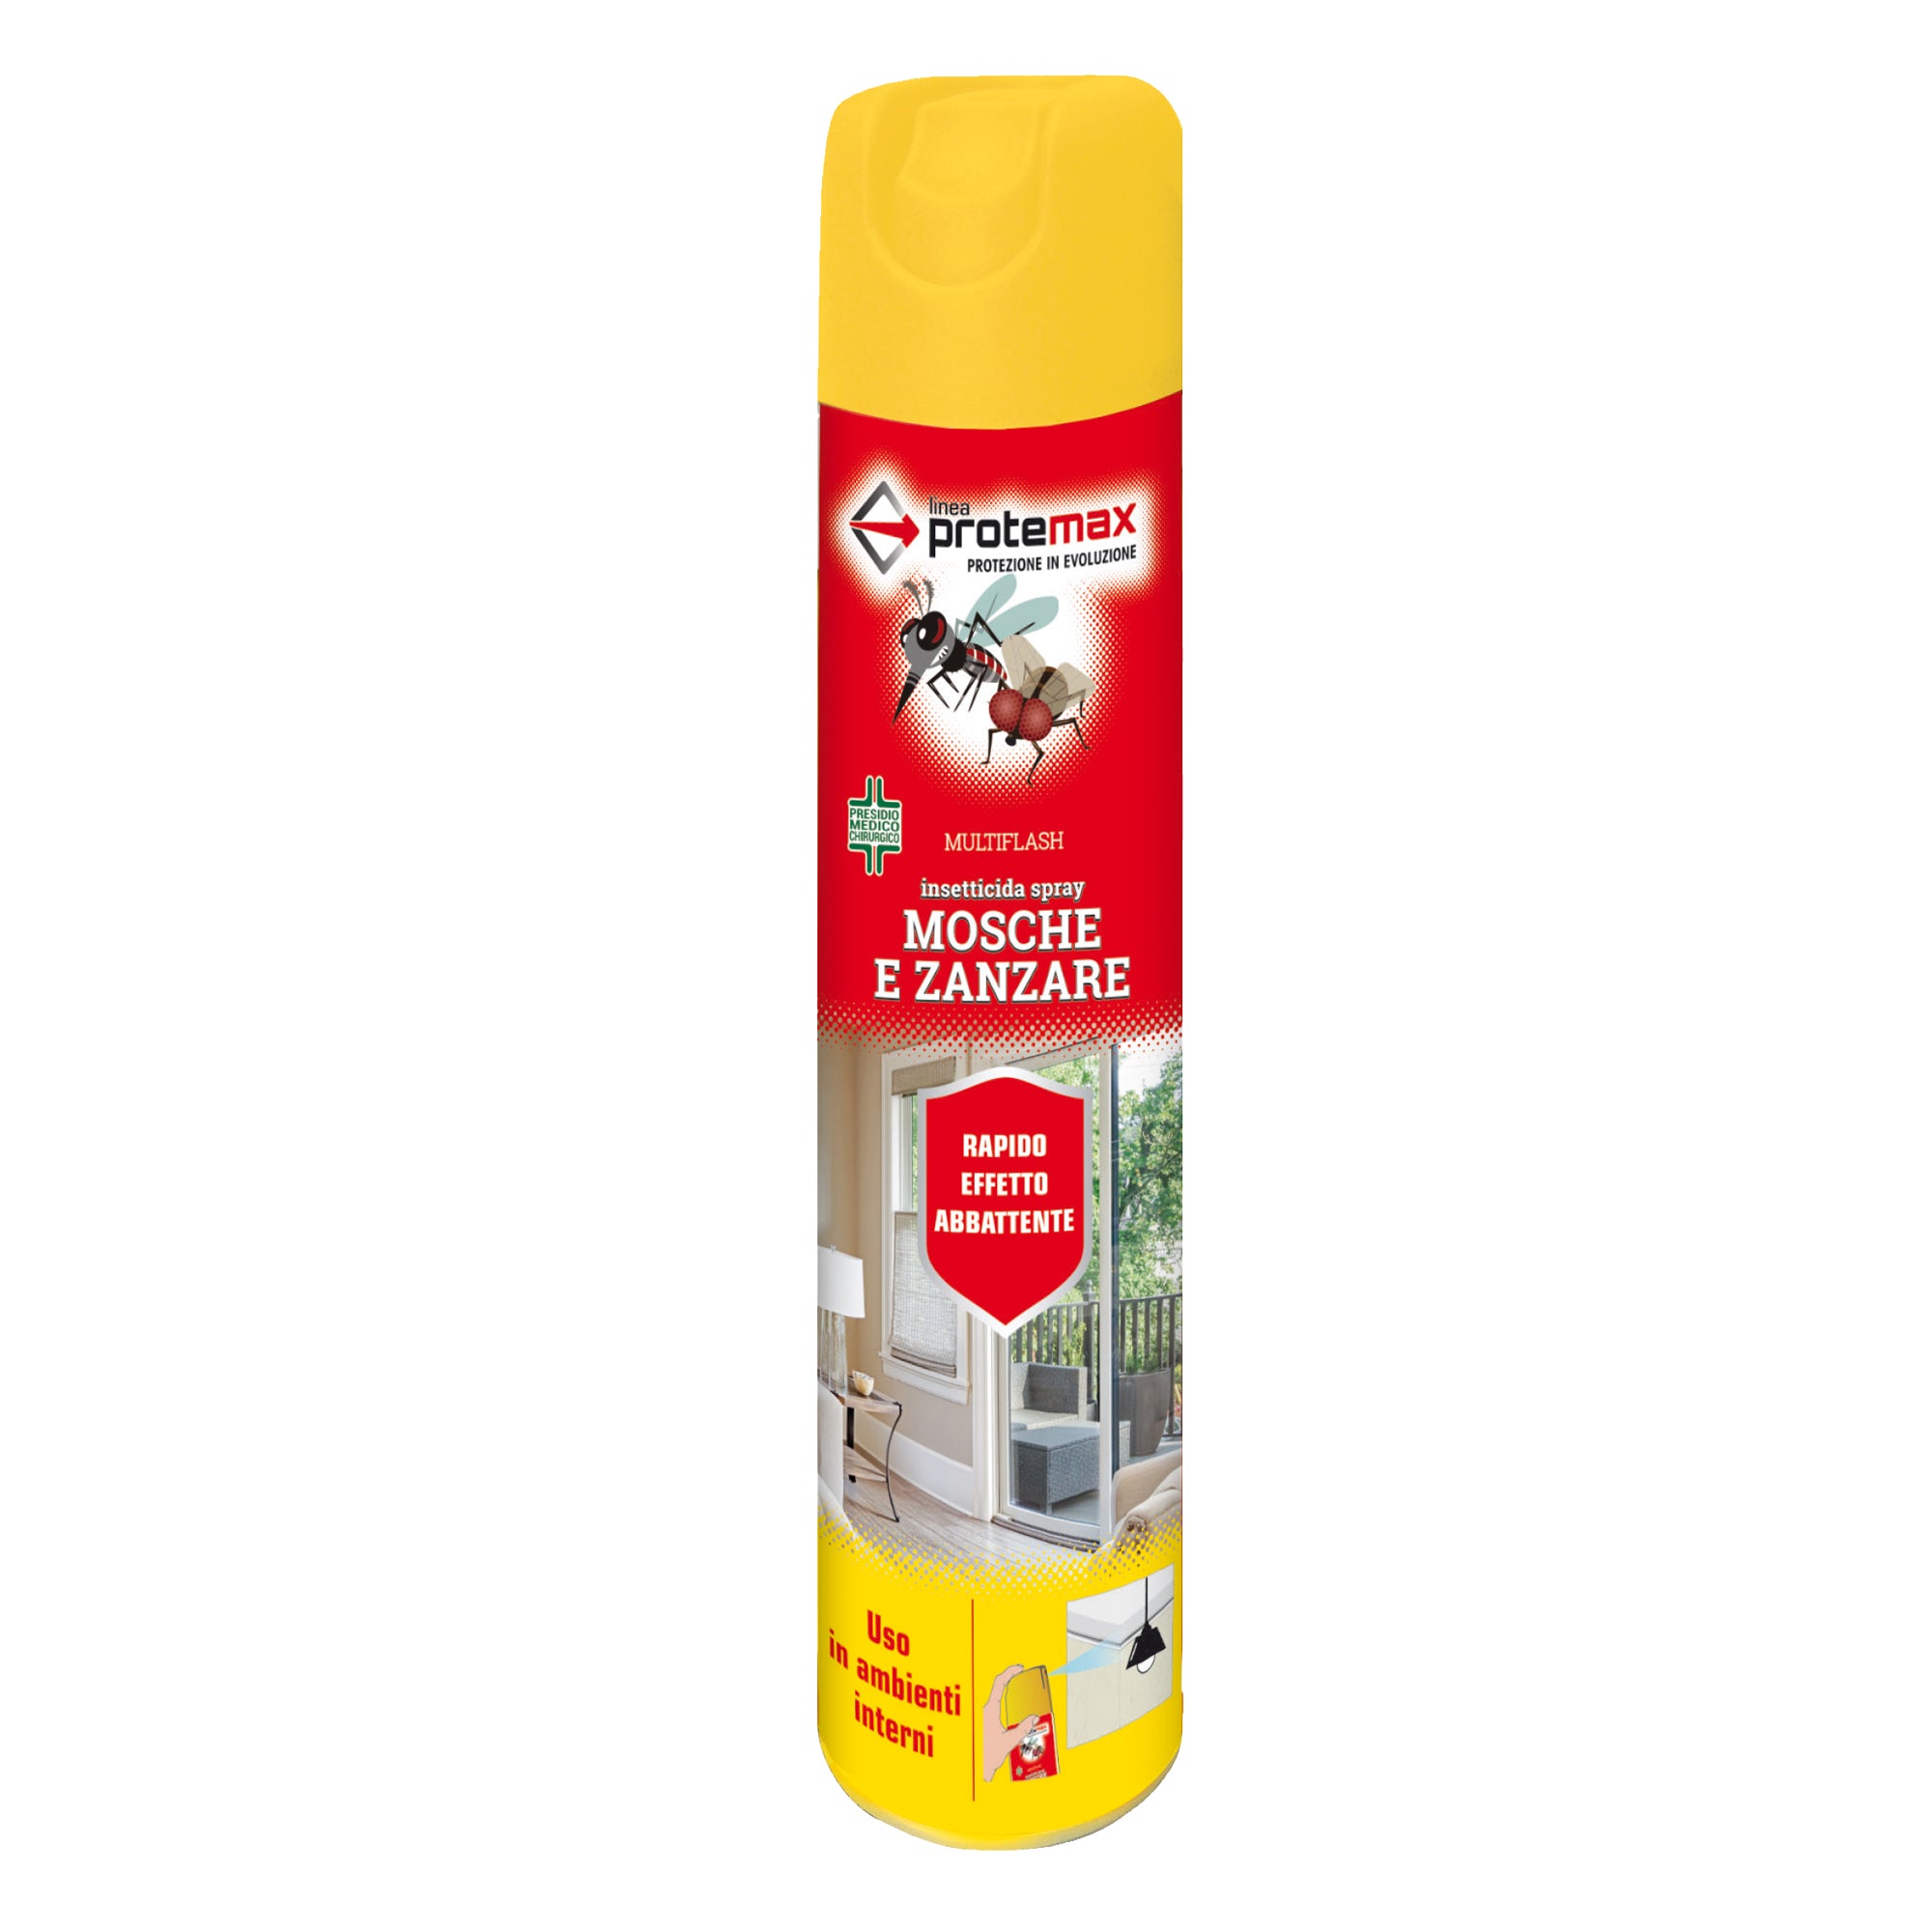 protemax-insetticida-spray-mosche-zanzare-500ml